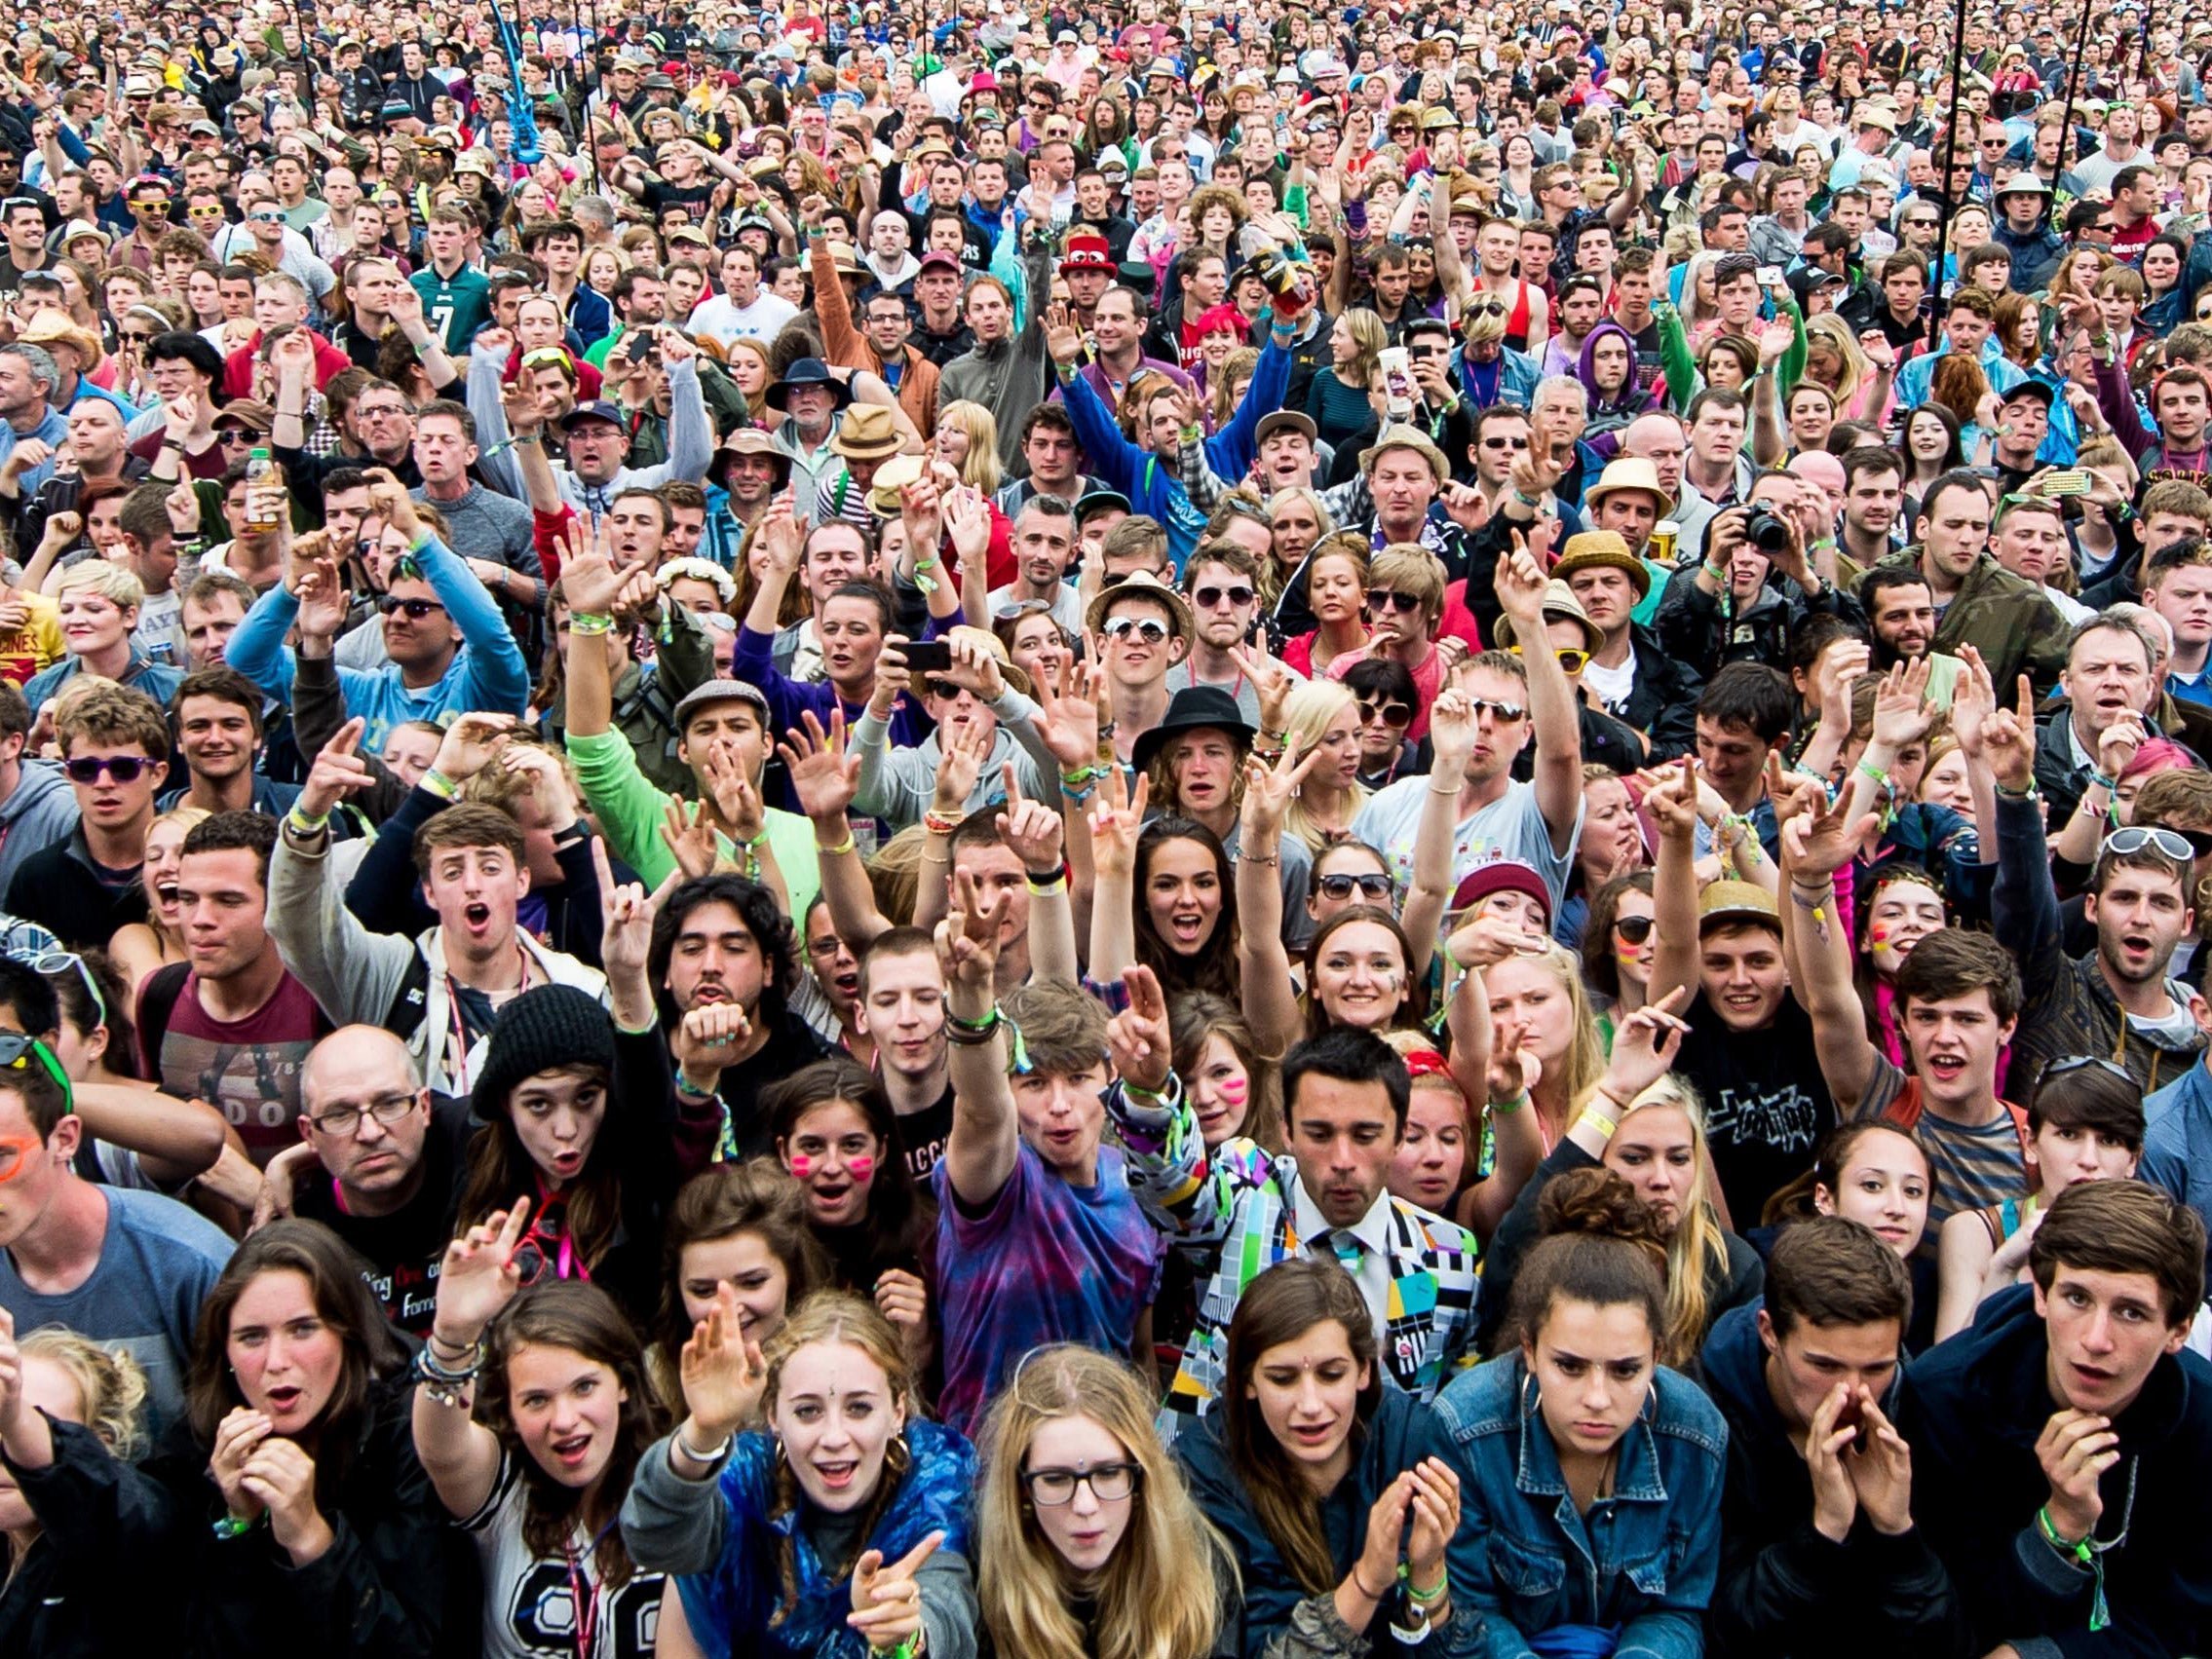 фотография толпы людей